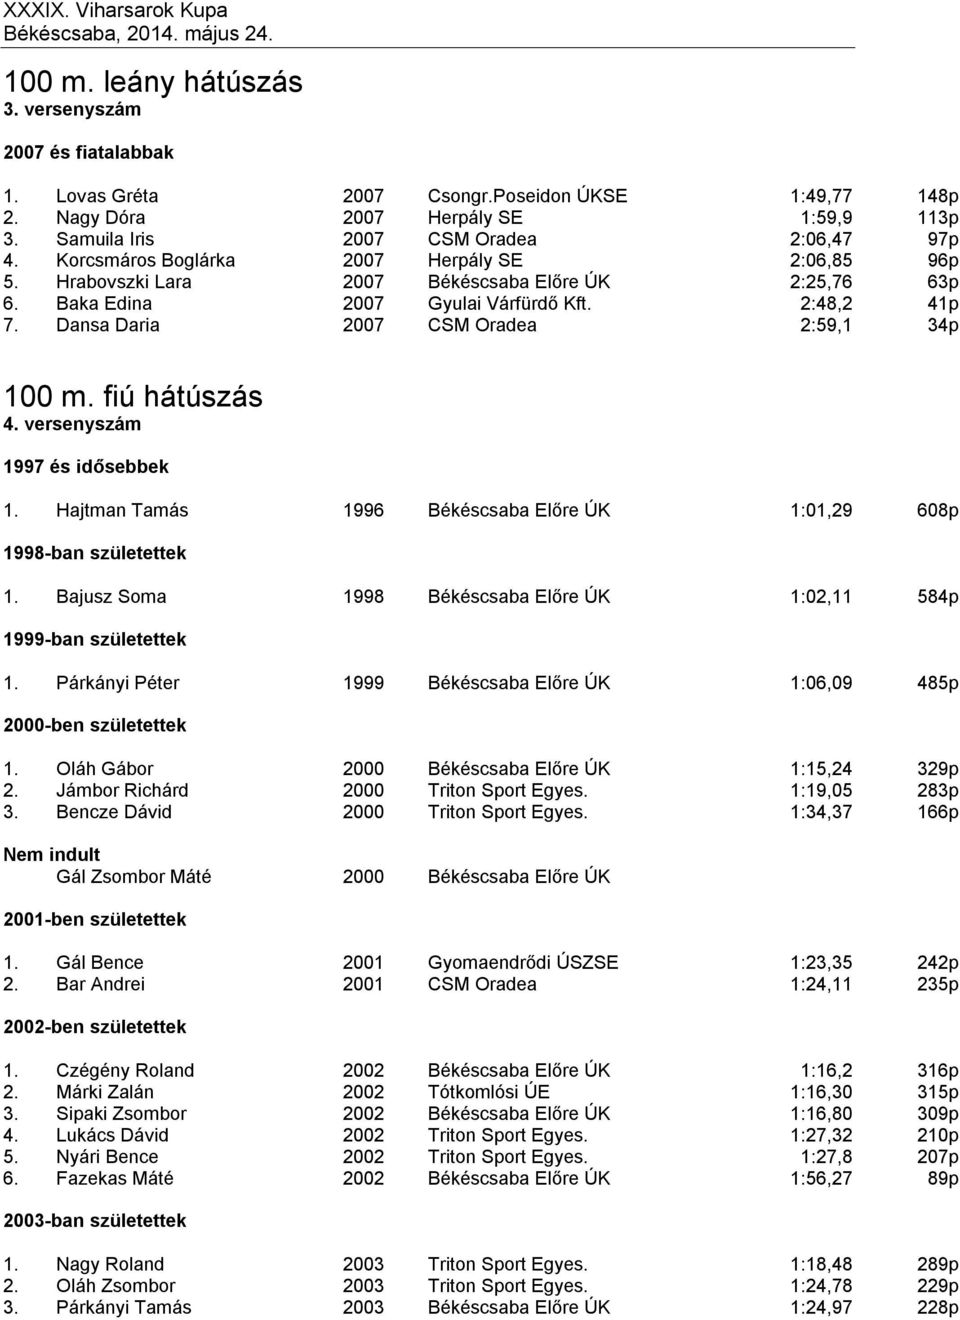 Dansa Daria 2007 CSM Oradea 2:59,1 34p 100 m. fiú hátúszás 4. versenyszám 1997 és idősebbek 1. Hajtman Tamás 1996 Békéscsaba Előre ÚK 1:01,29 608p 1998-ban születettek 1.